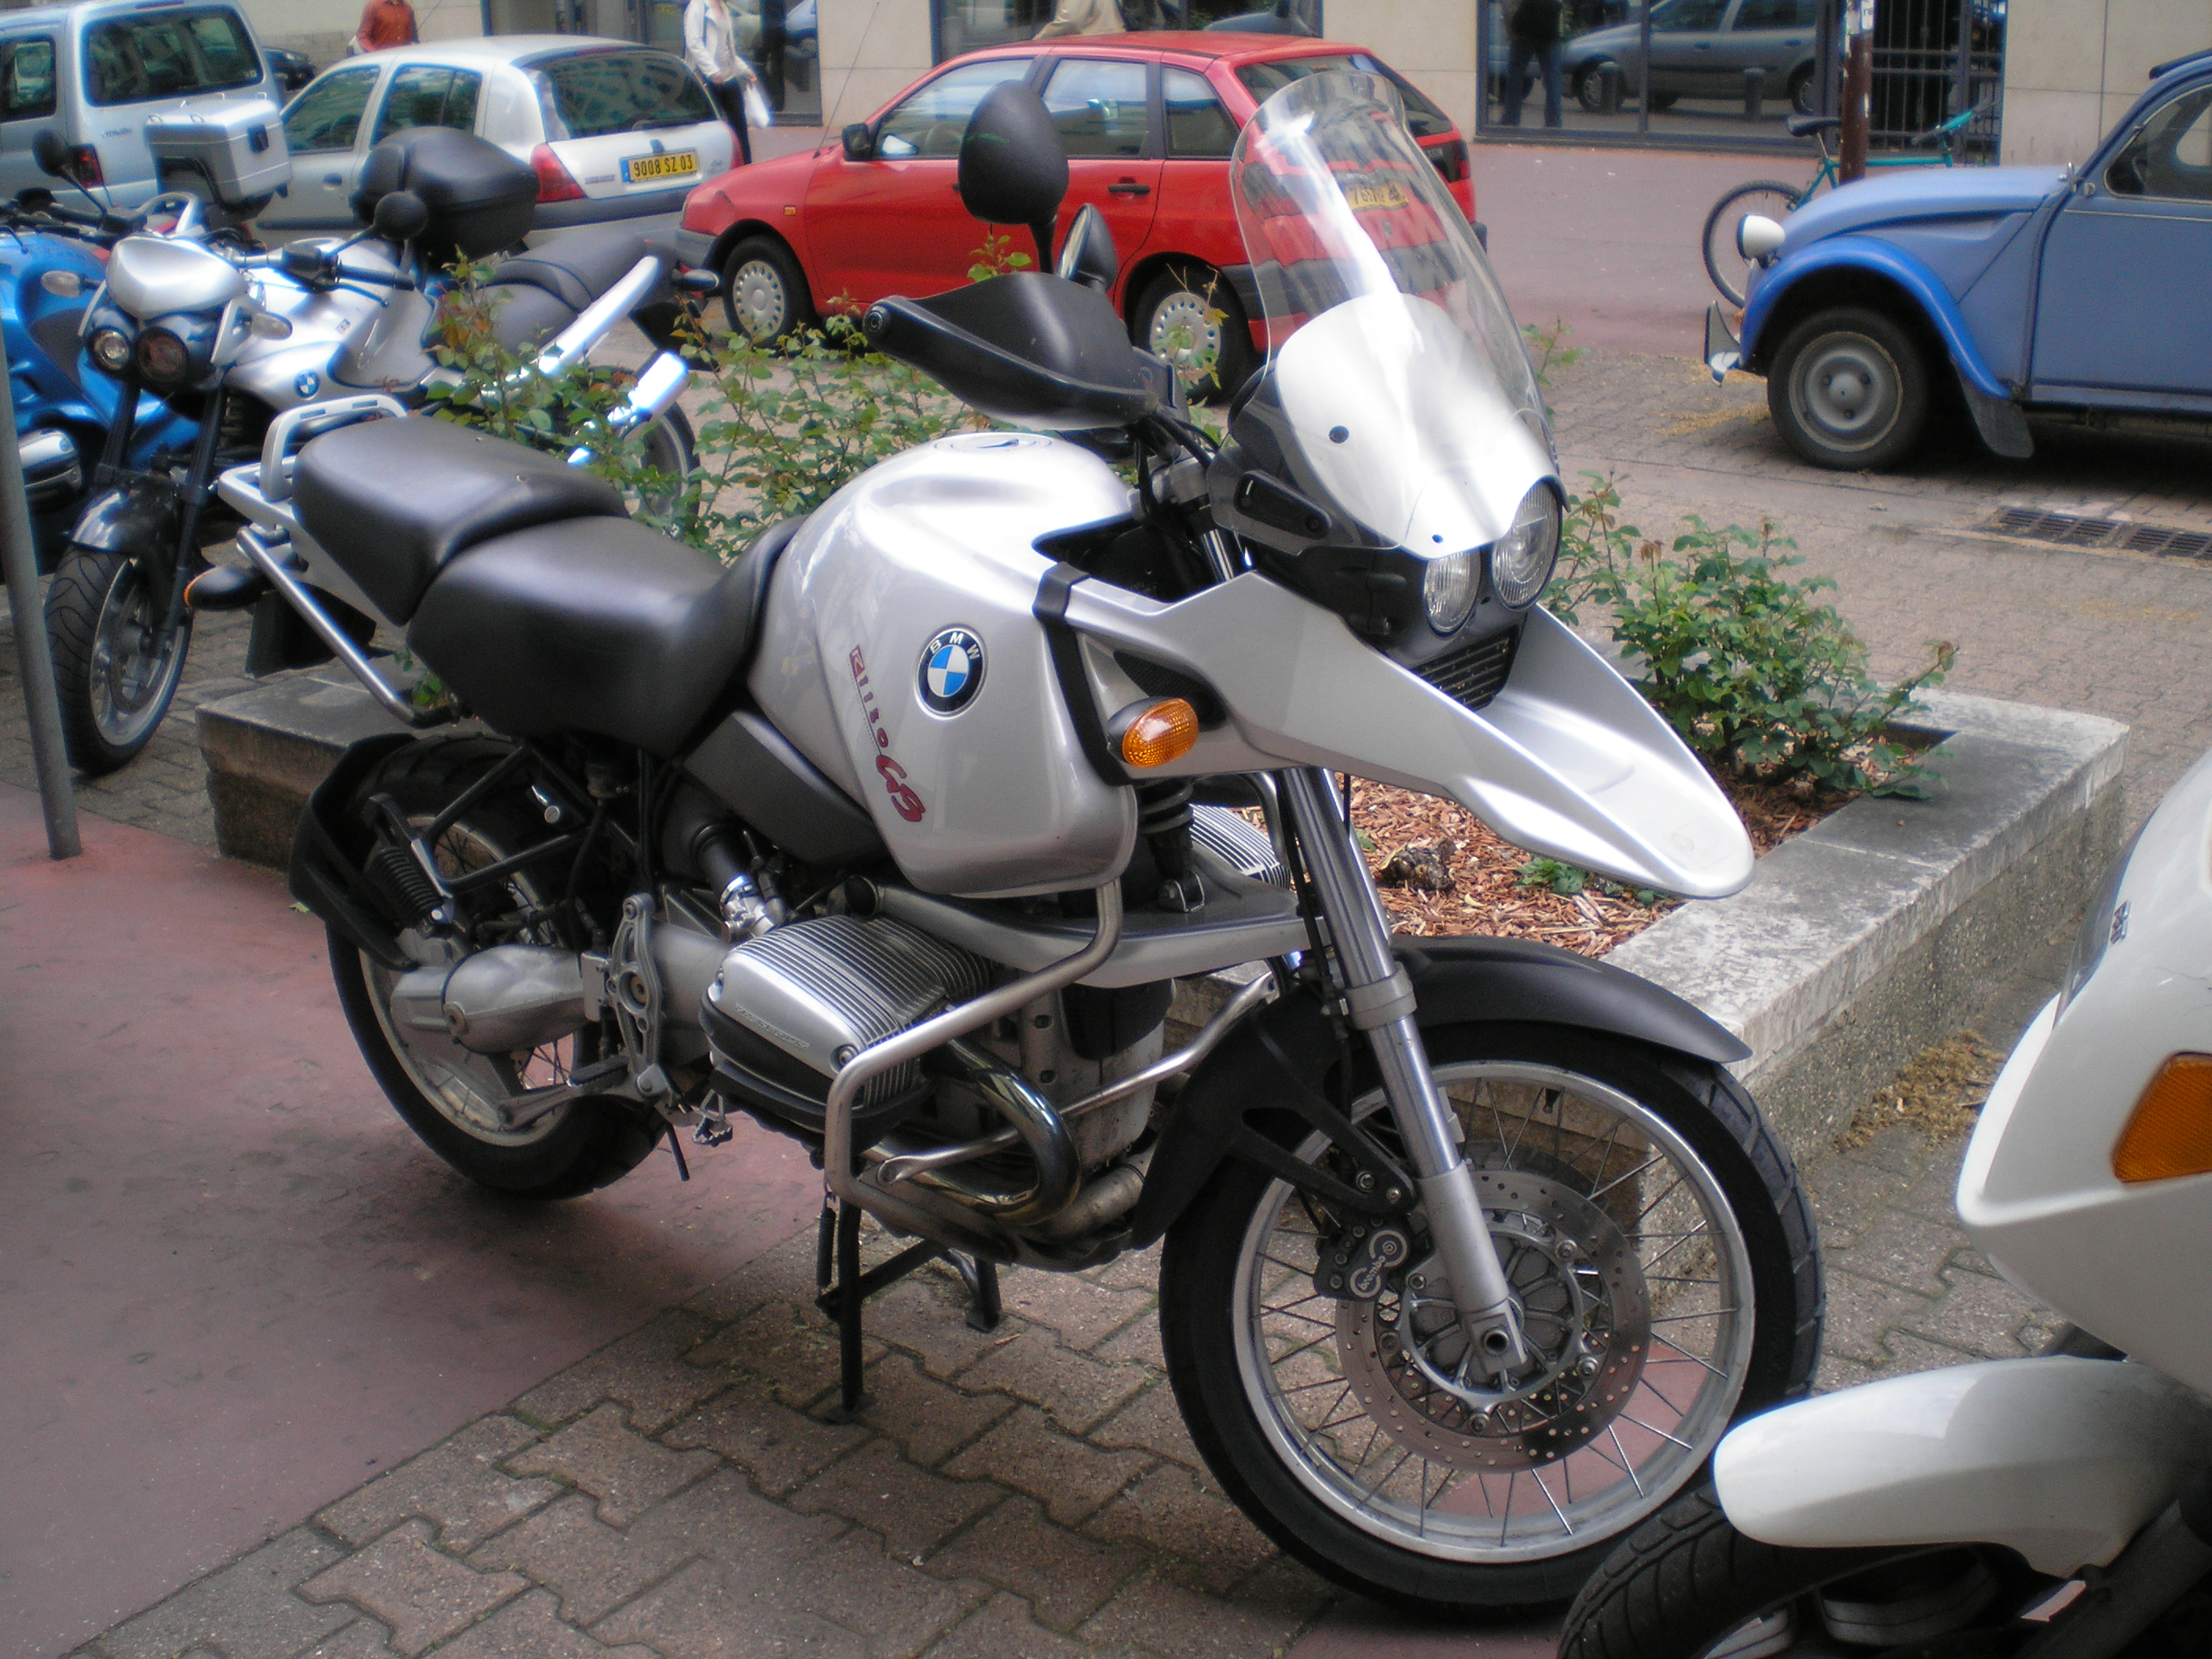 BMW R 1150 GS